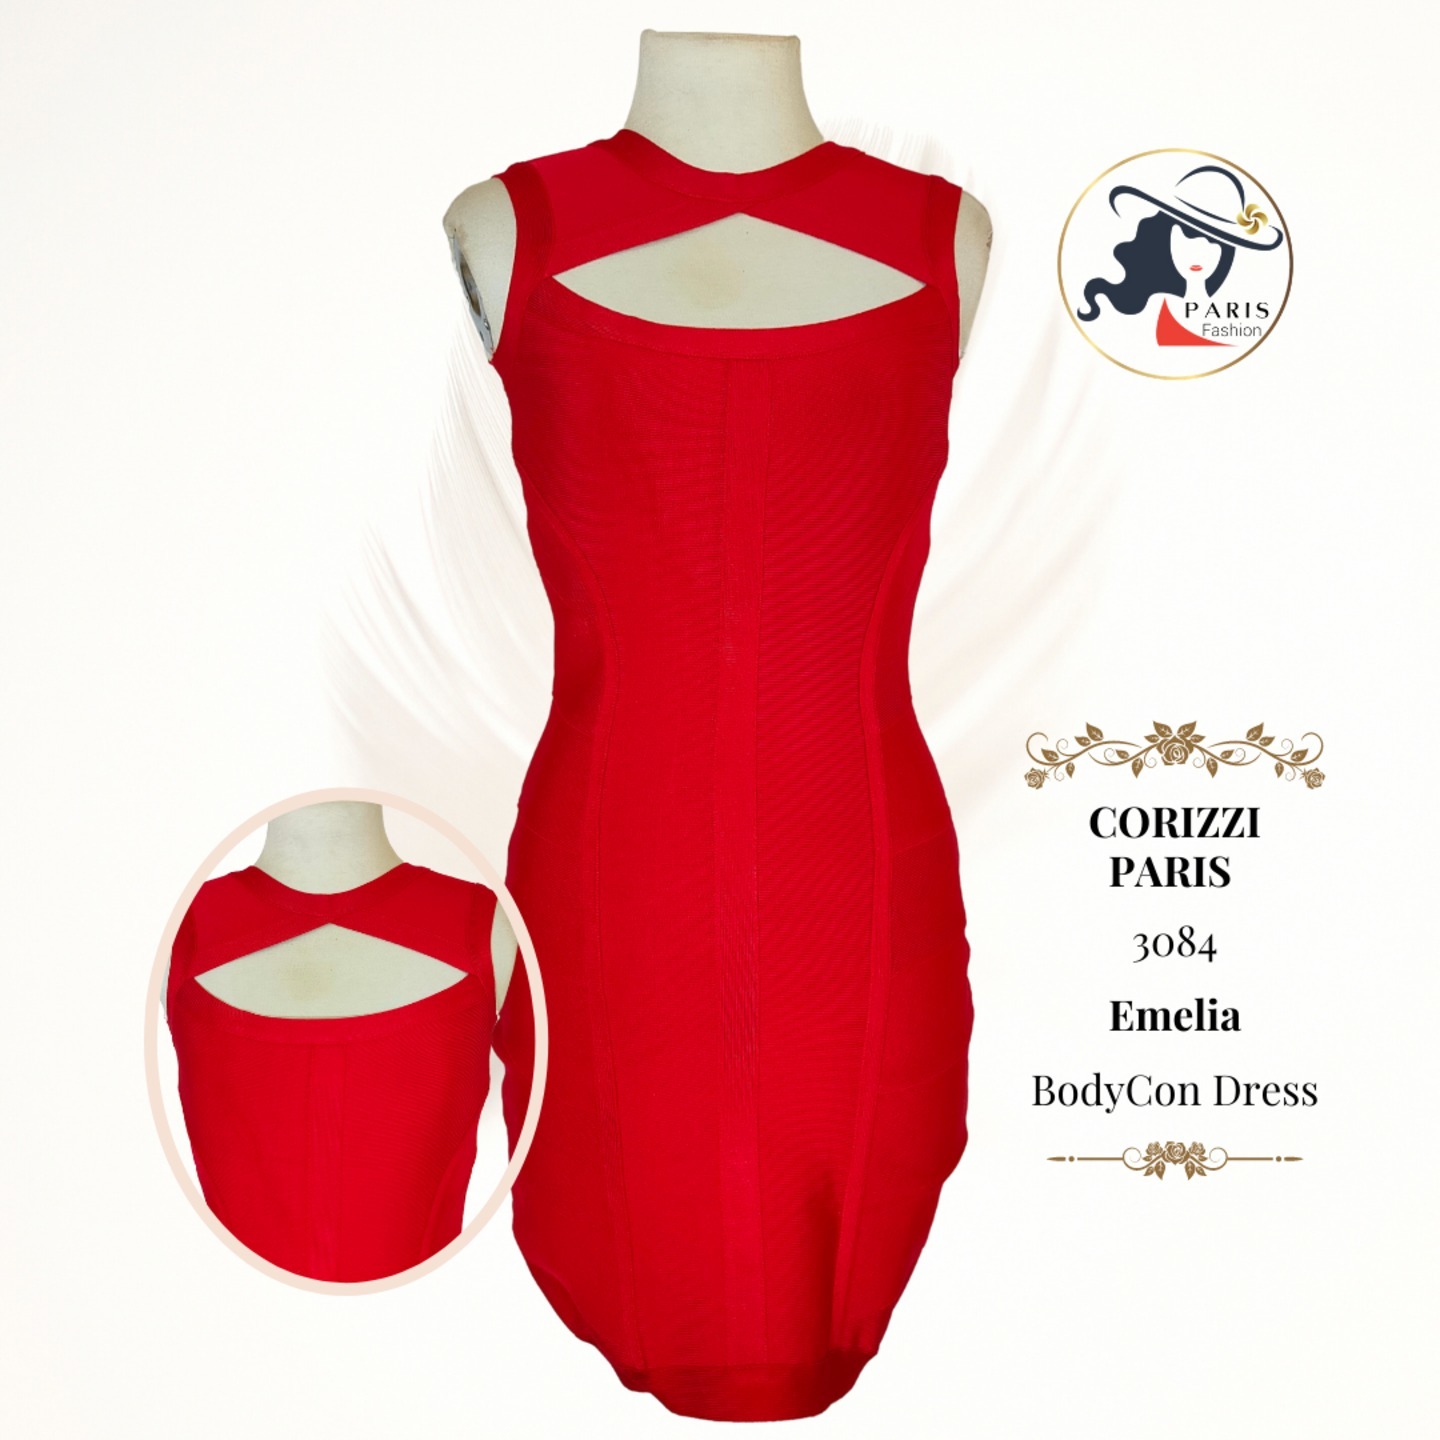 CORIZZI PARIS   3084   Emelia   BodyCon Dress